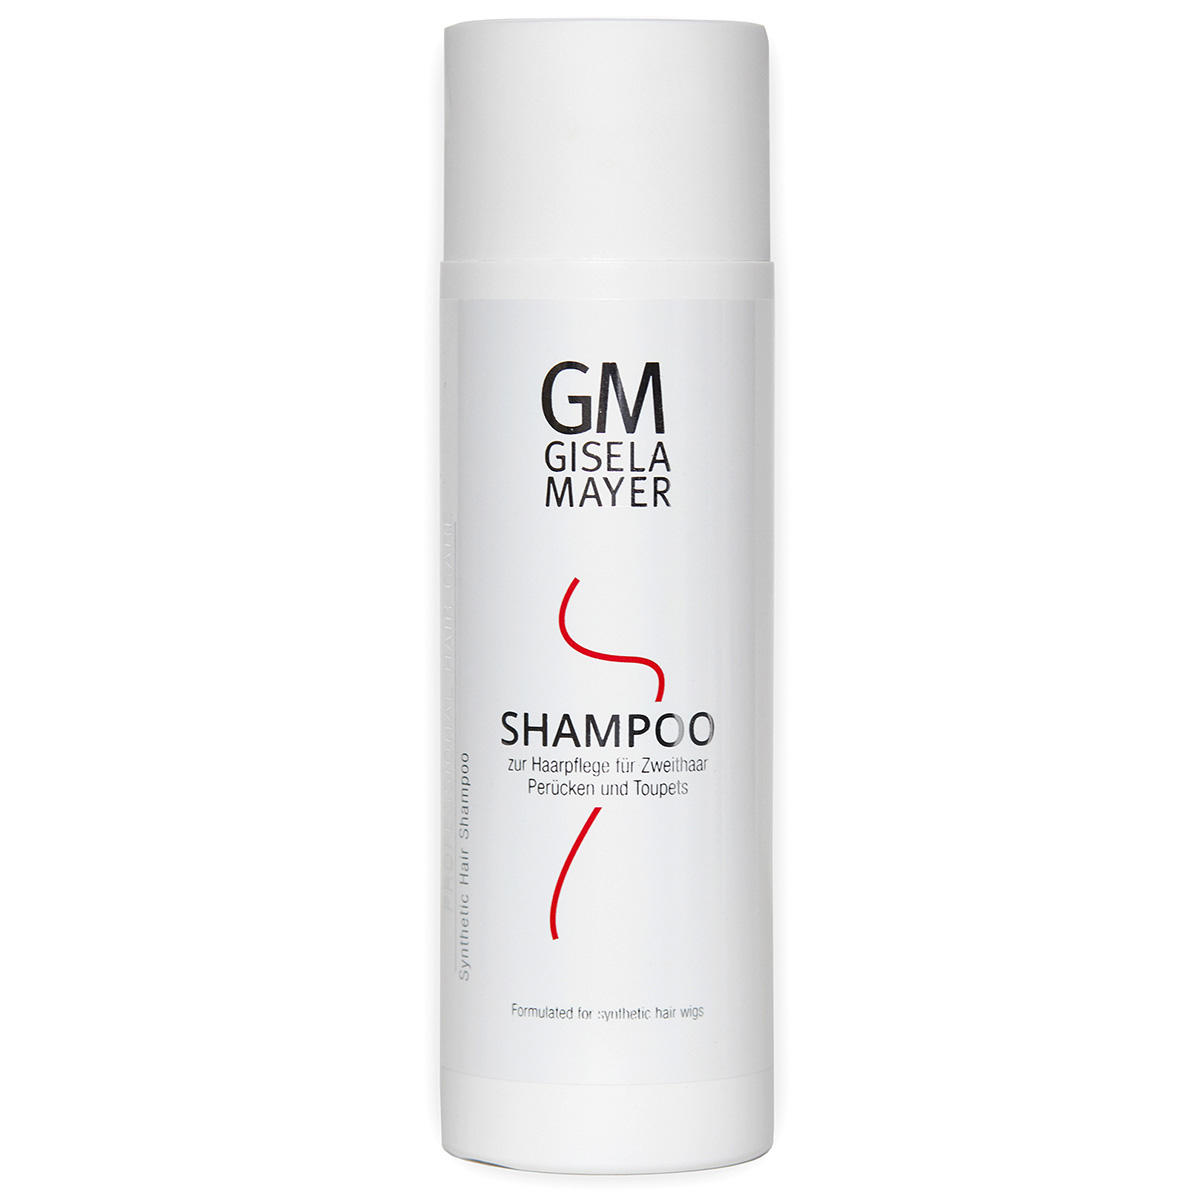 Gisela Mayer Shampoo per capelli sintetici 200 ml - 1